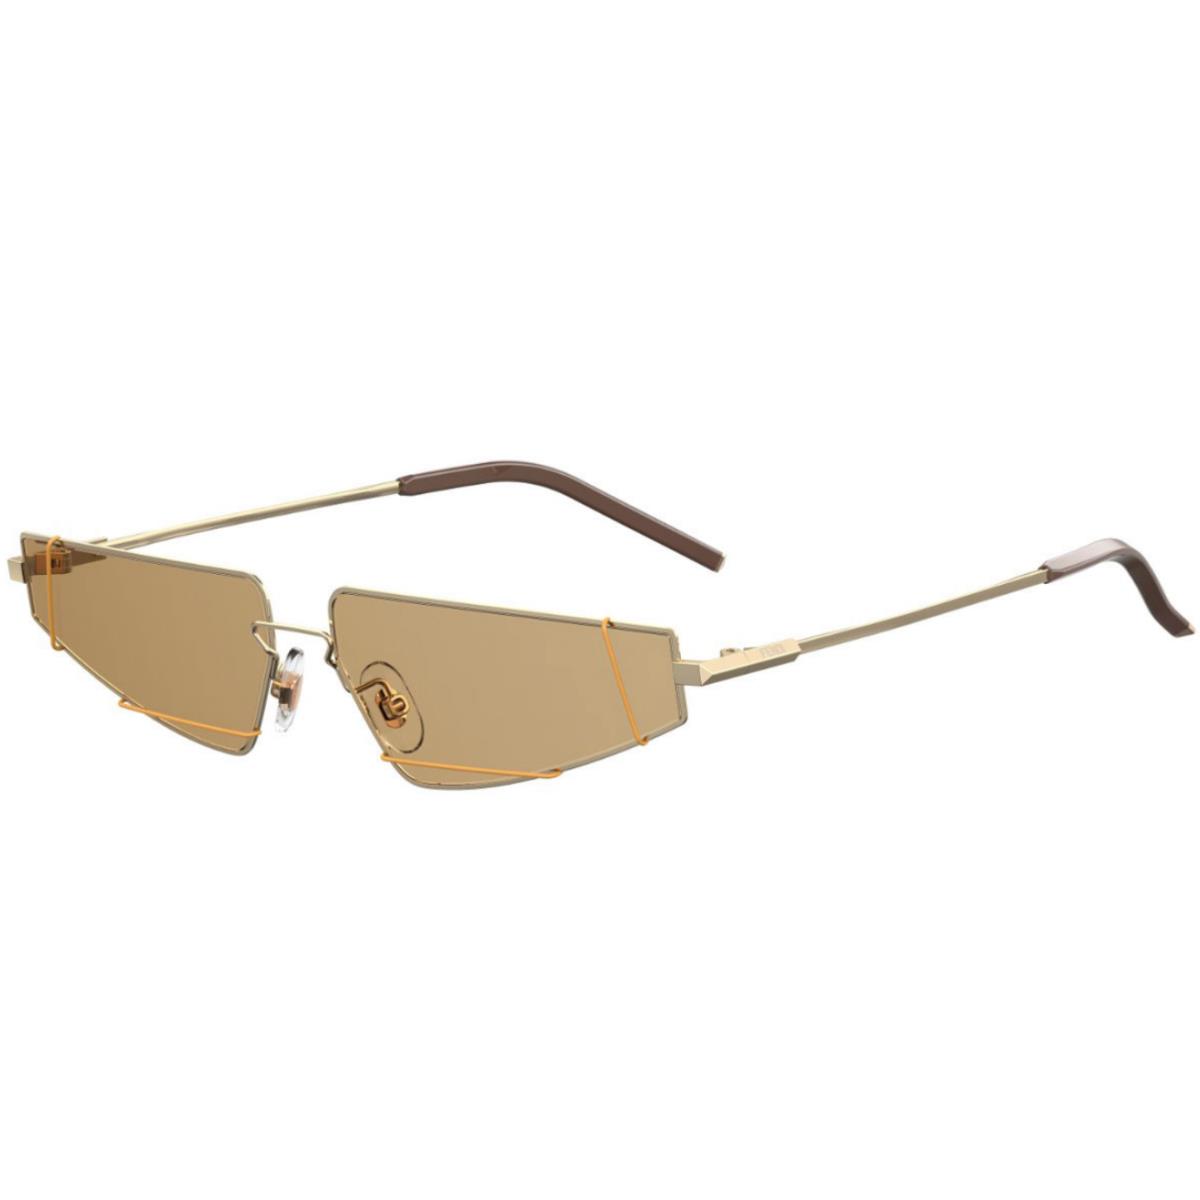 Fendi Mens Gold 61mm Geometric Sunglasses S3734